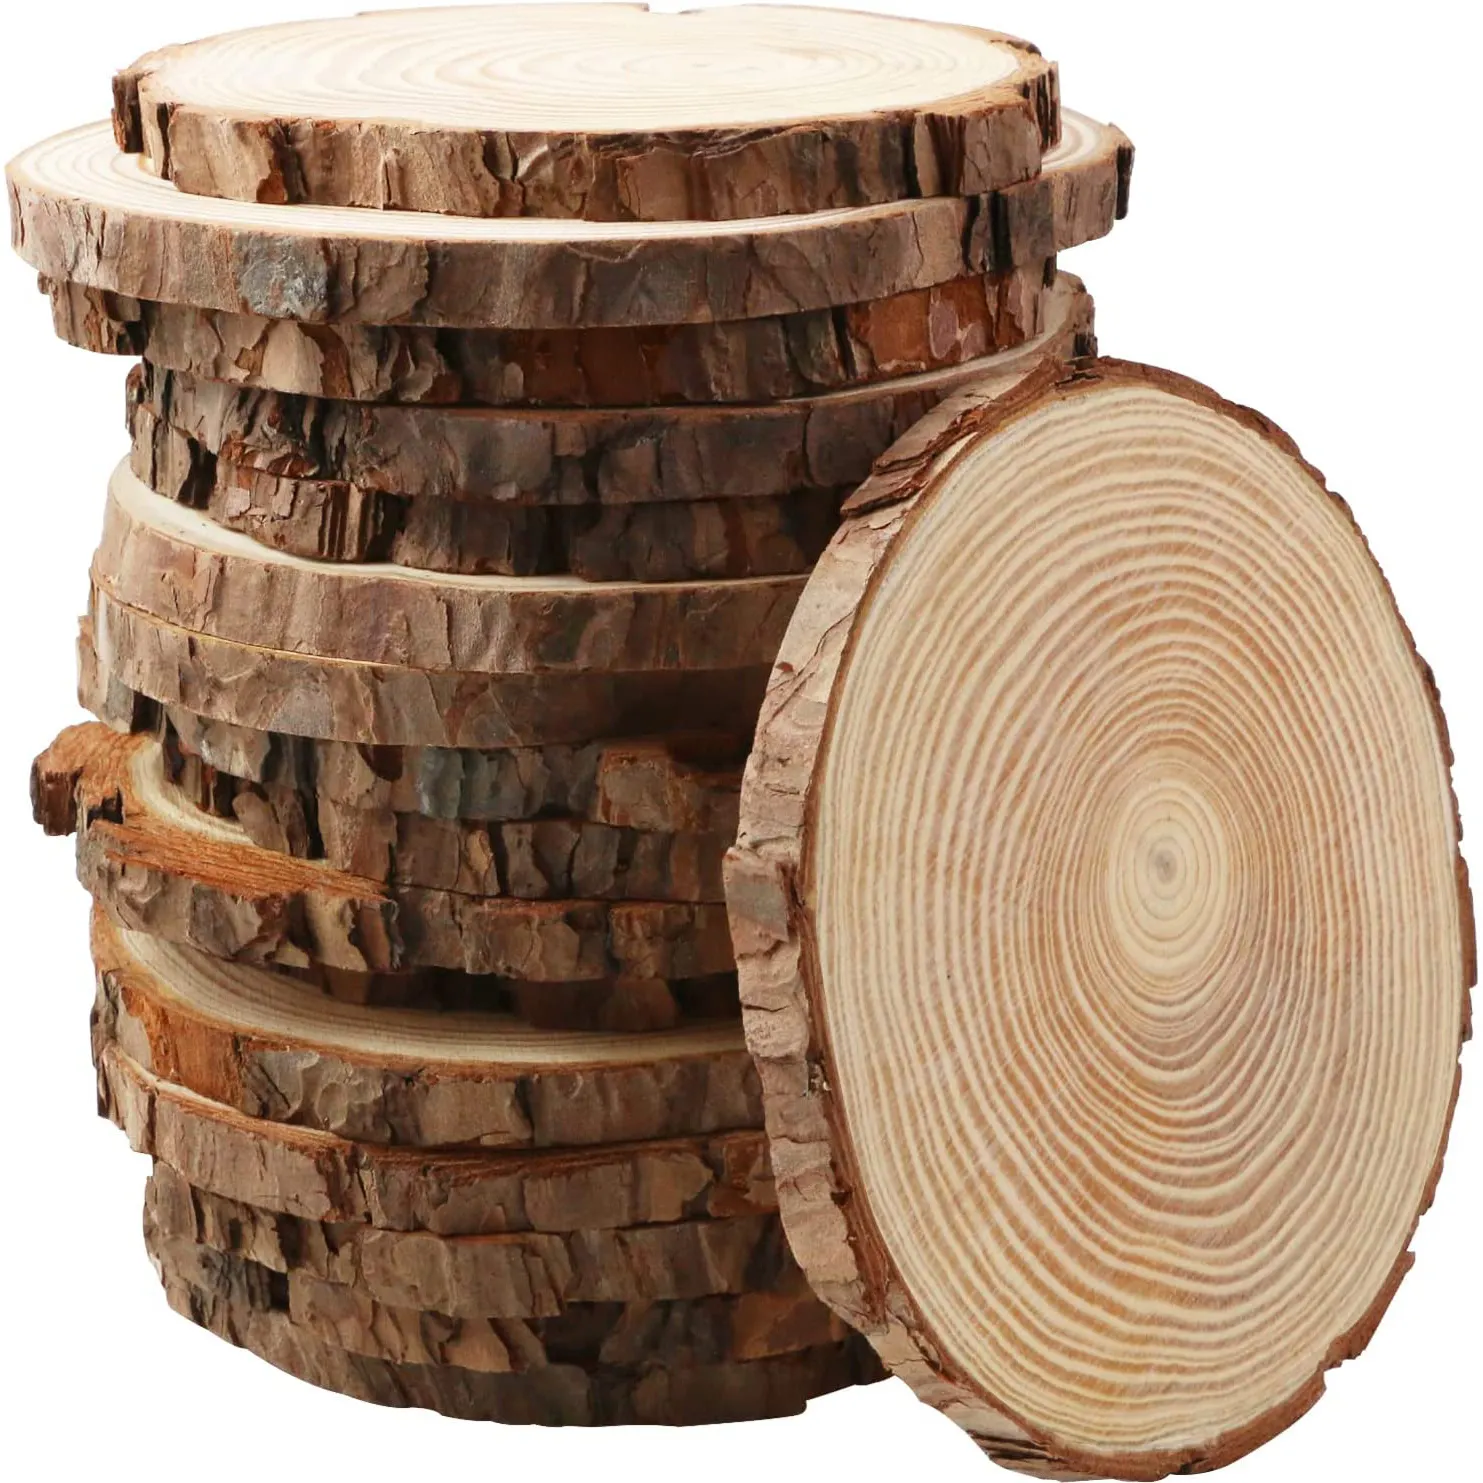 나무 껍질 나무 칩 중심 조각 타원형 나무 조각과 미완성 나무 트레이